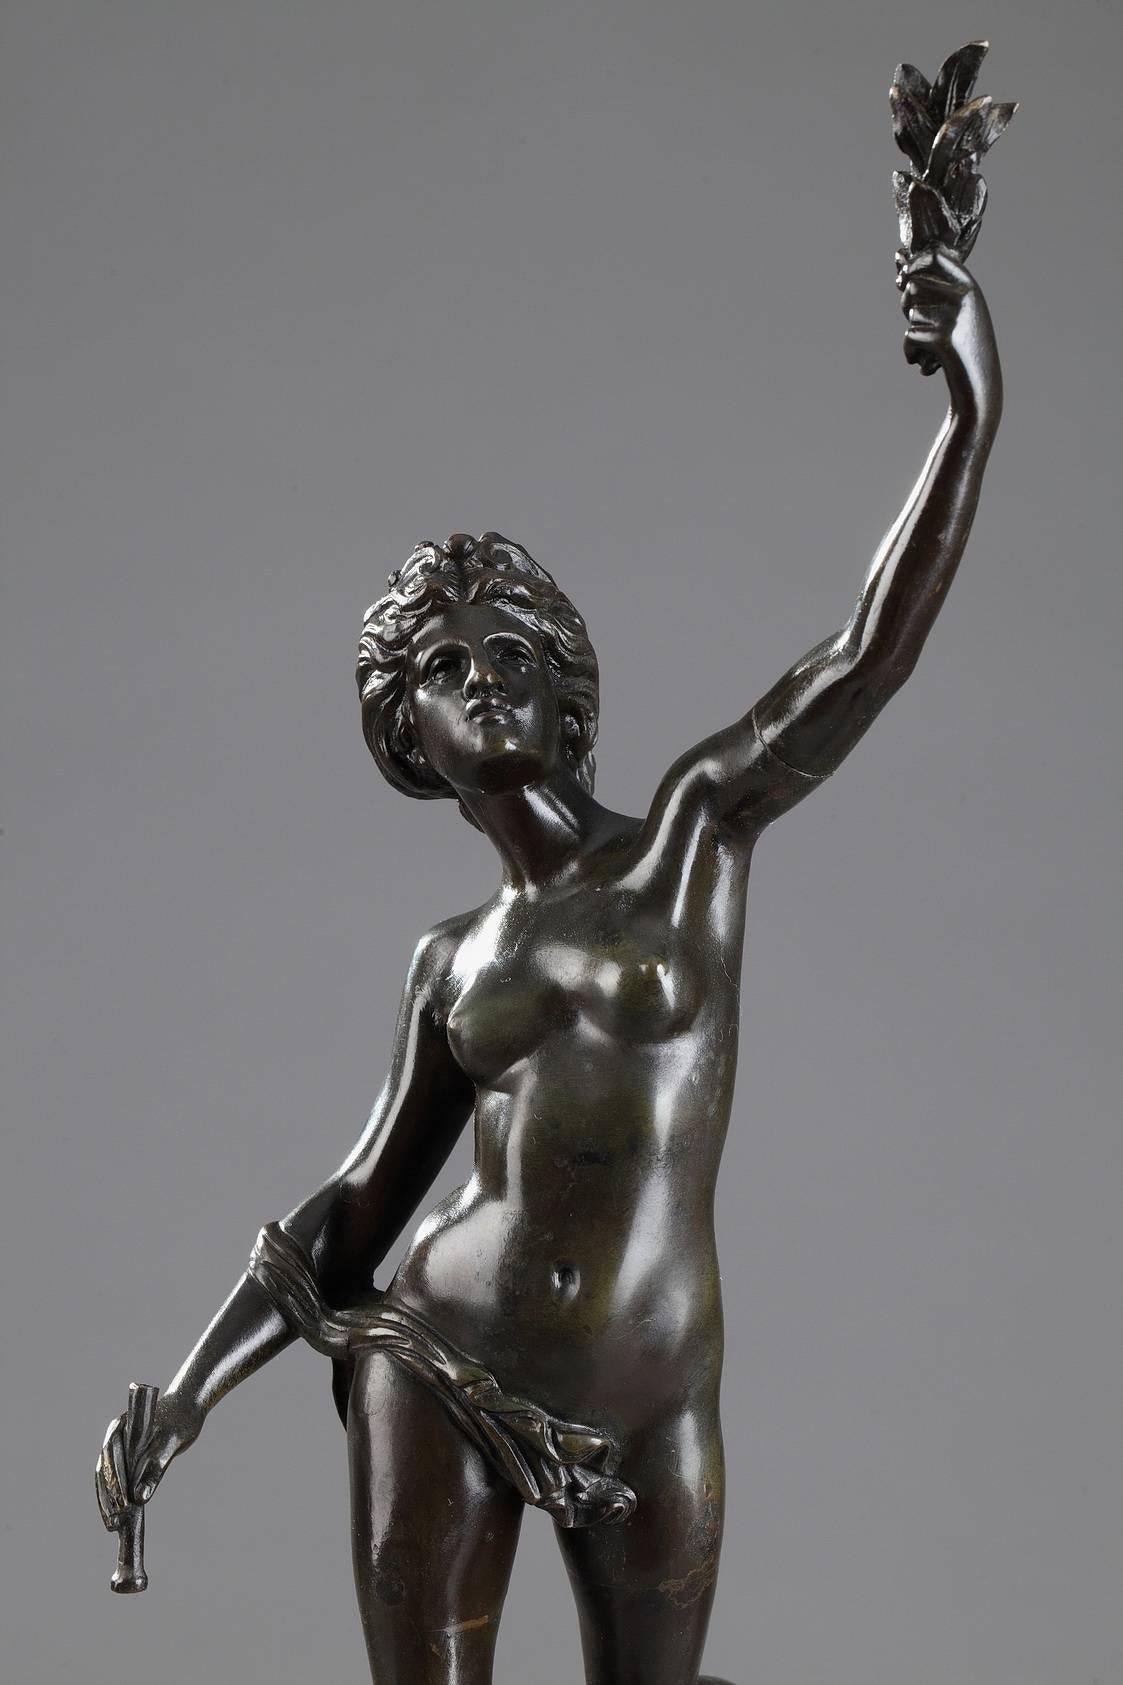 Deux sculptures en bronze patiné représentant Fortune, la déesse de la chance et du hasard, et Mercure, le dieu de la bonne fortune dans la mythologie romaine. Chaque divinité est représentée avec ses symboles : La Fortune porte des grains dans une